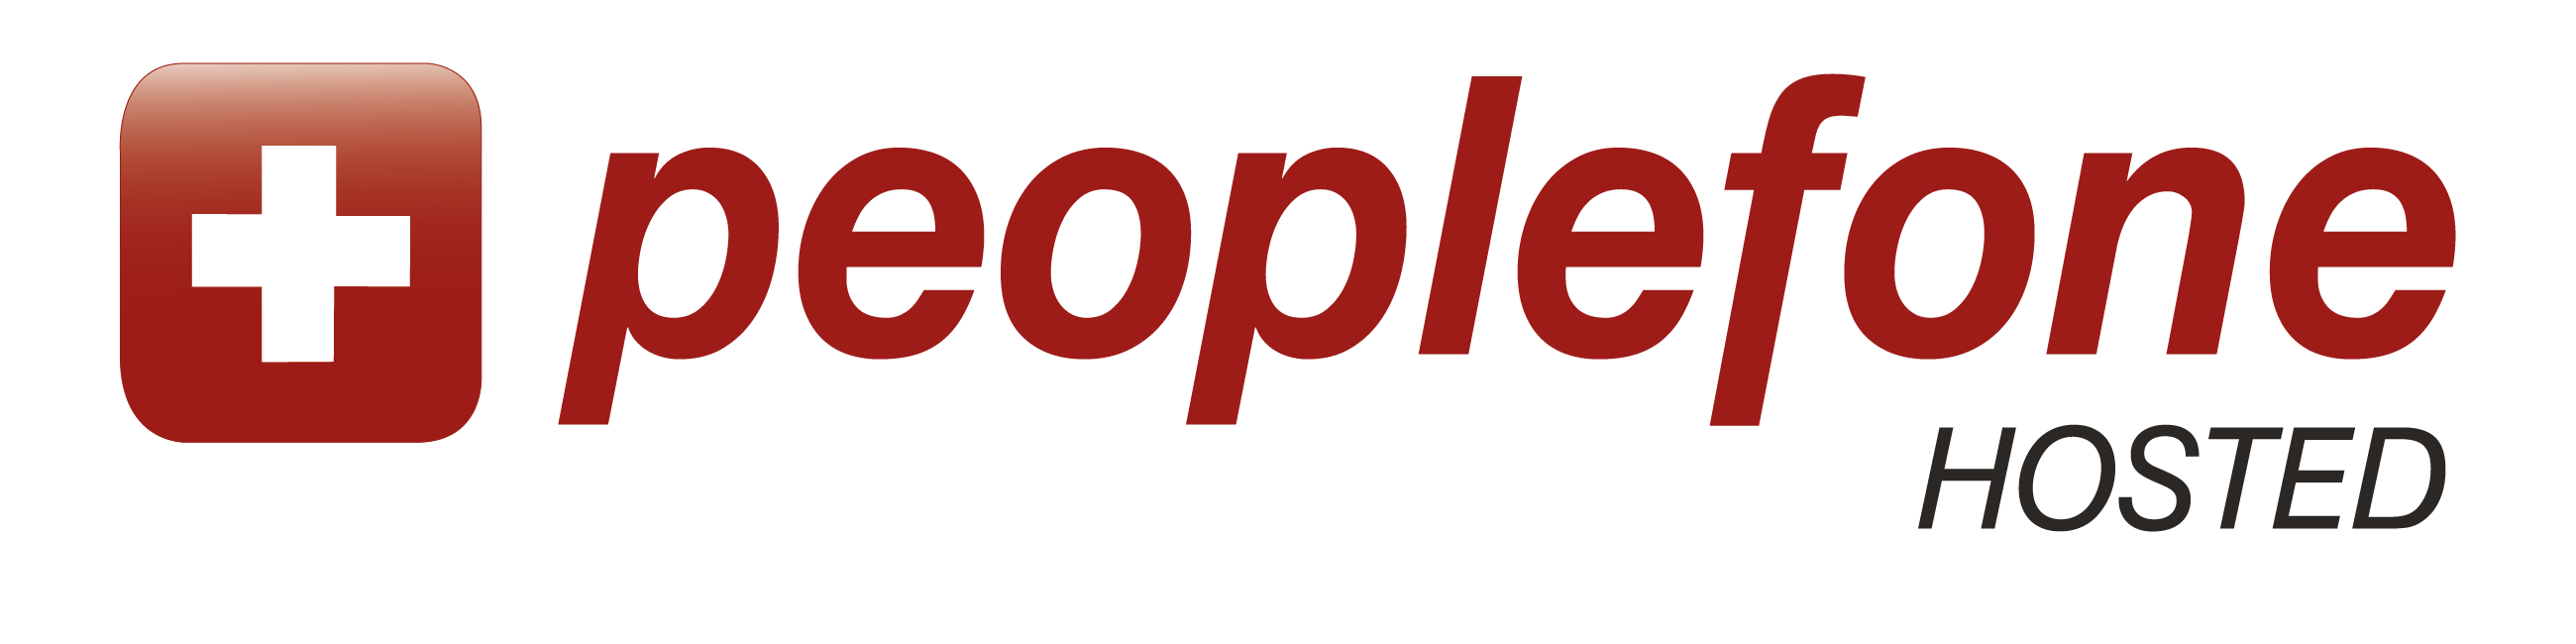 peoplefone hosted logo